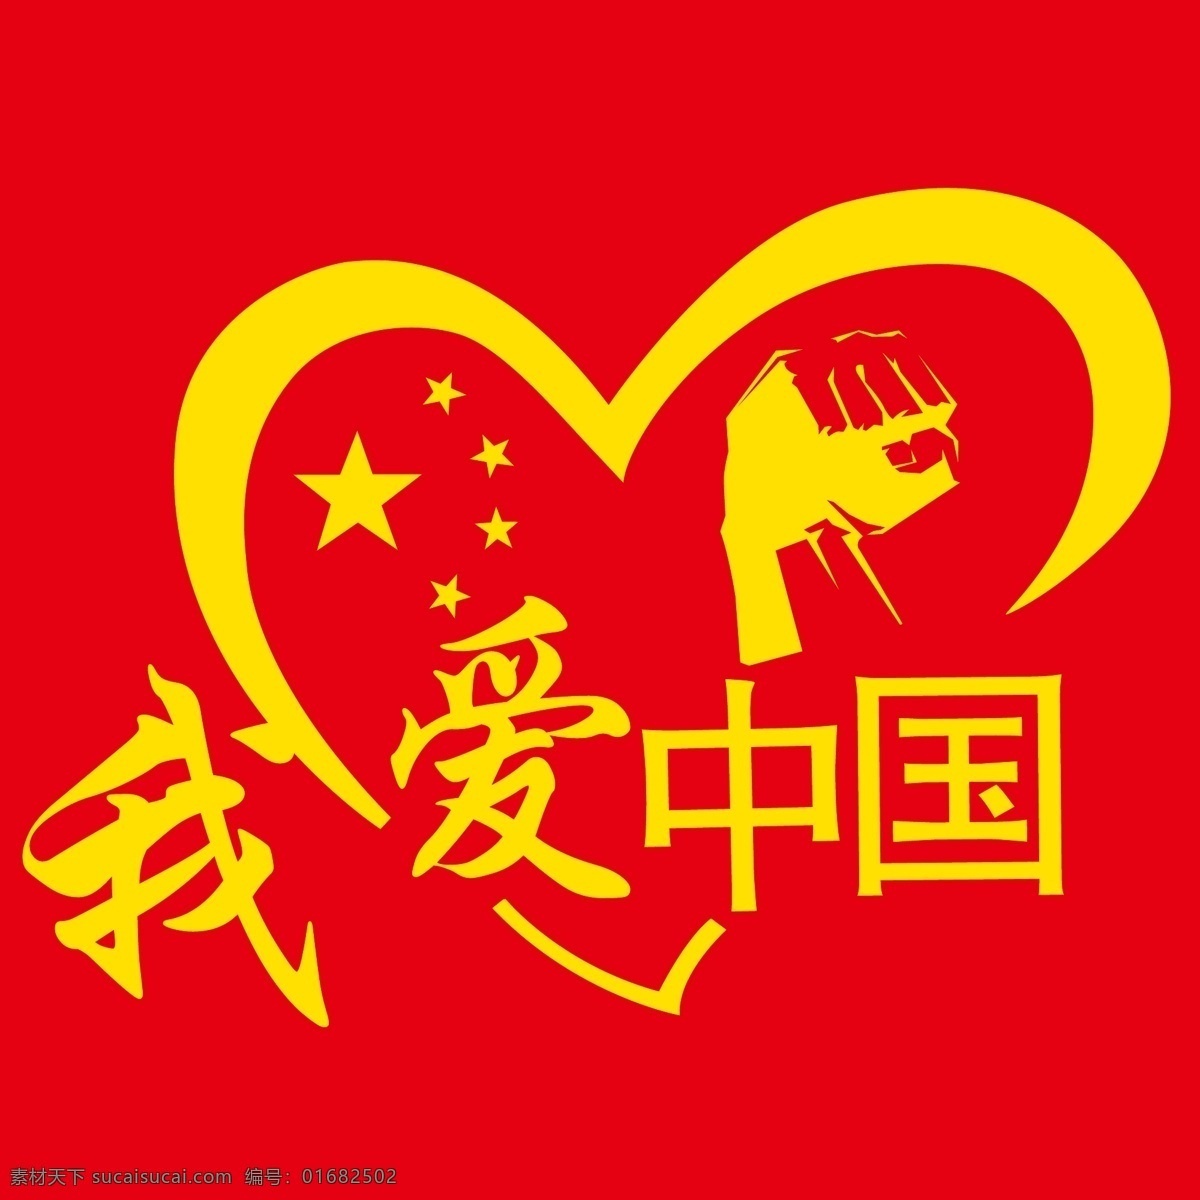 我爱中国图片 我爱中国 我爱你中国 i love china 班服 t恤 我爱中国系列 招贴设计